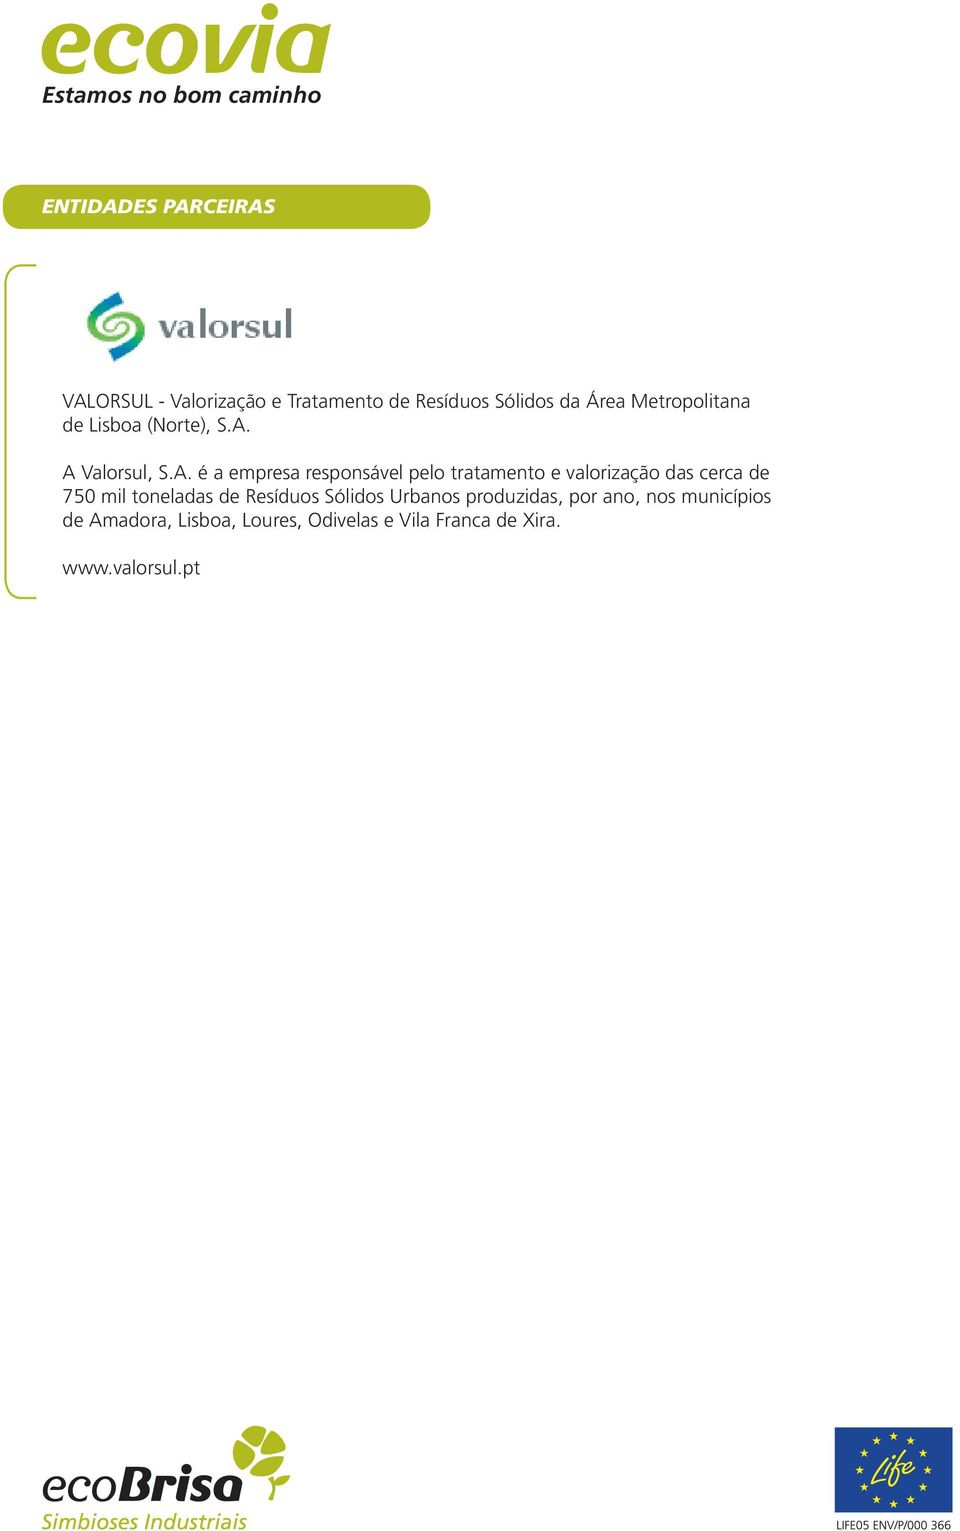 A Valorsul, S.A. é a empresa responsável pelo tratamento e valorização das cerca de 750